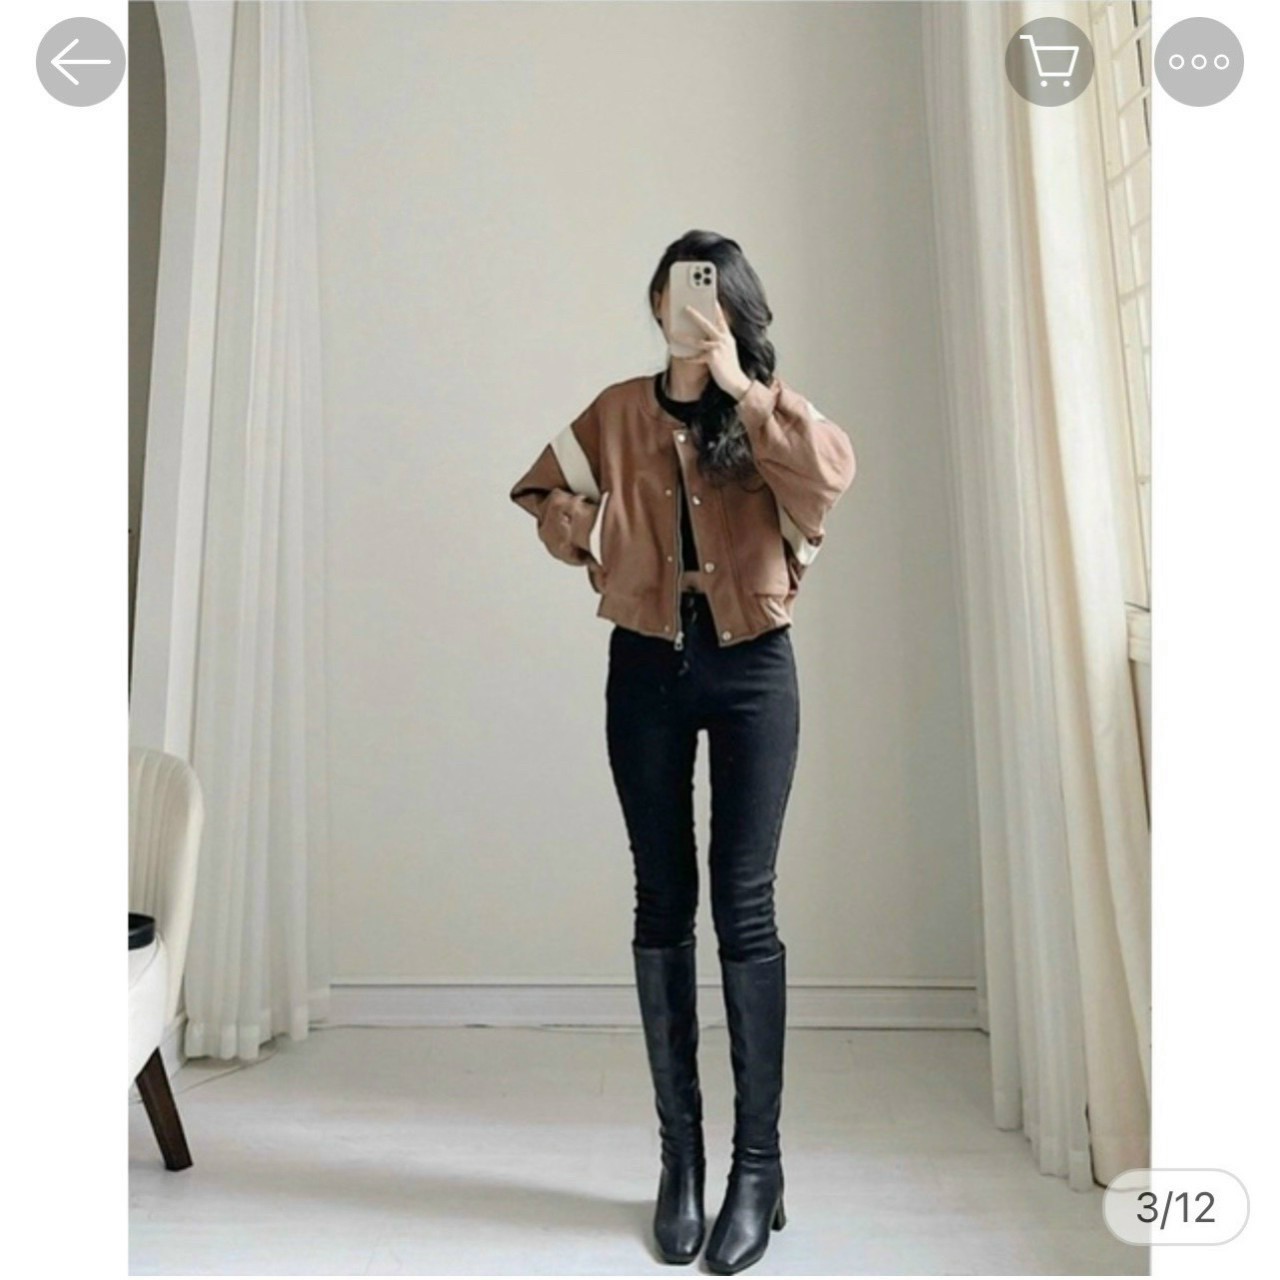 Áo khoác nữ bomber croptop chất liệu da lộn 2 lớp from rộng cổ bẻ bấm cúc Hàn Quốc phong cách sexy cá tính